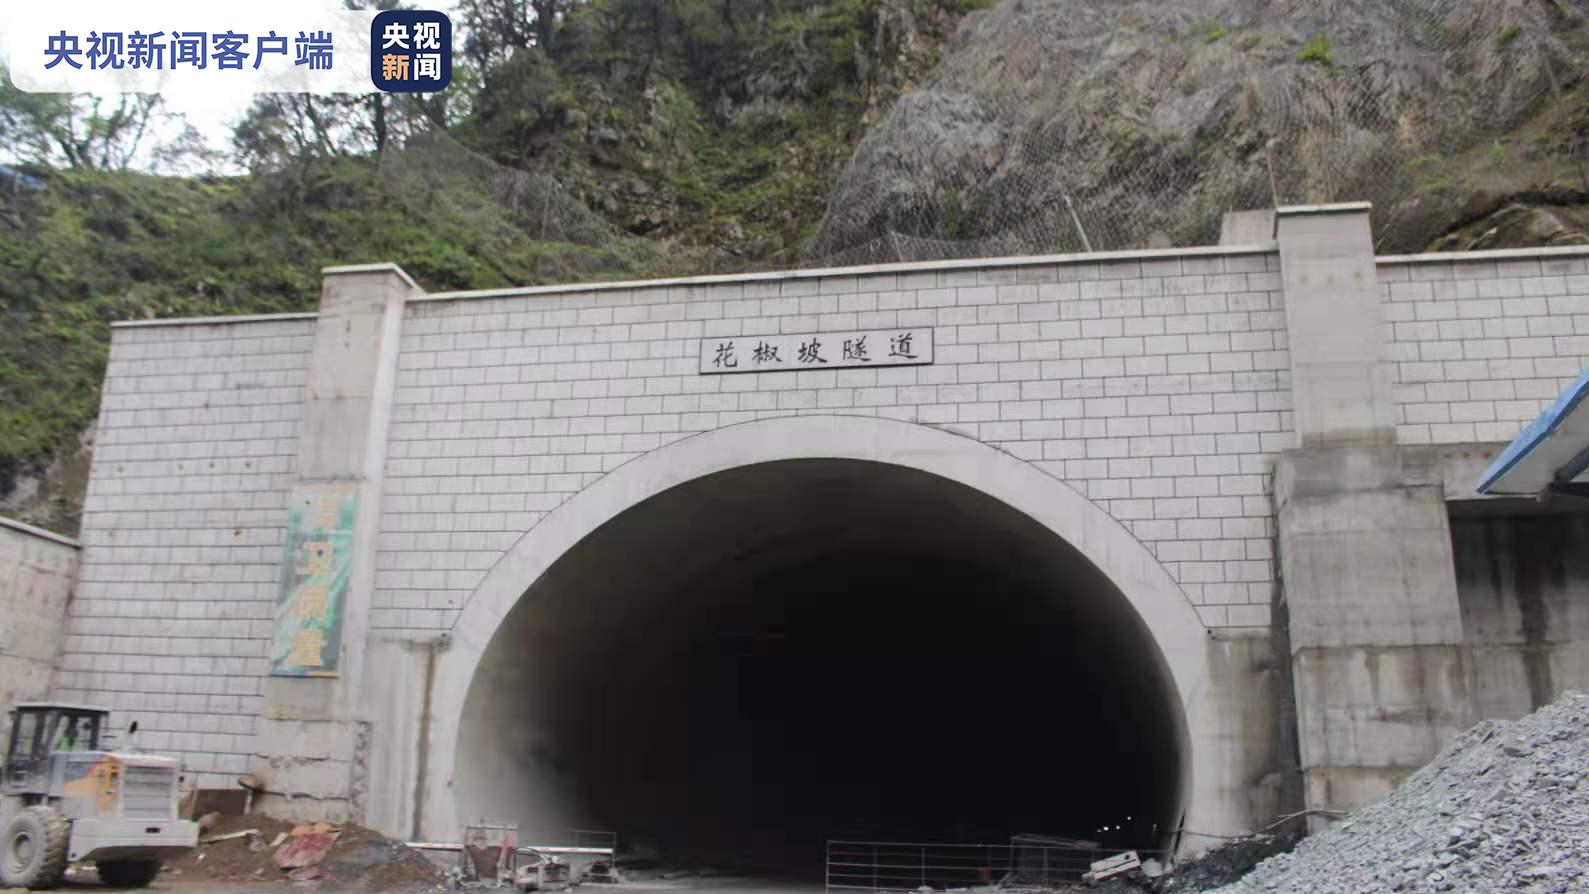 6年奋战 云南丽香铁路花椒坡隧道贯通